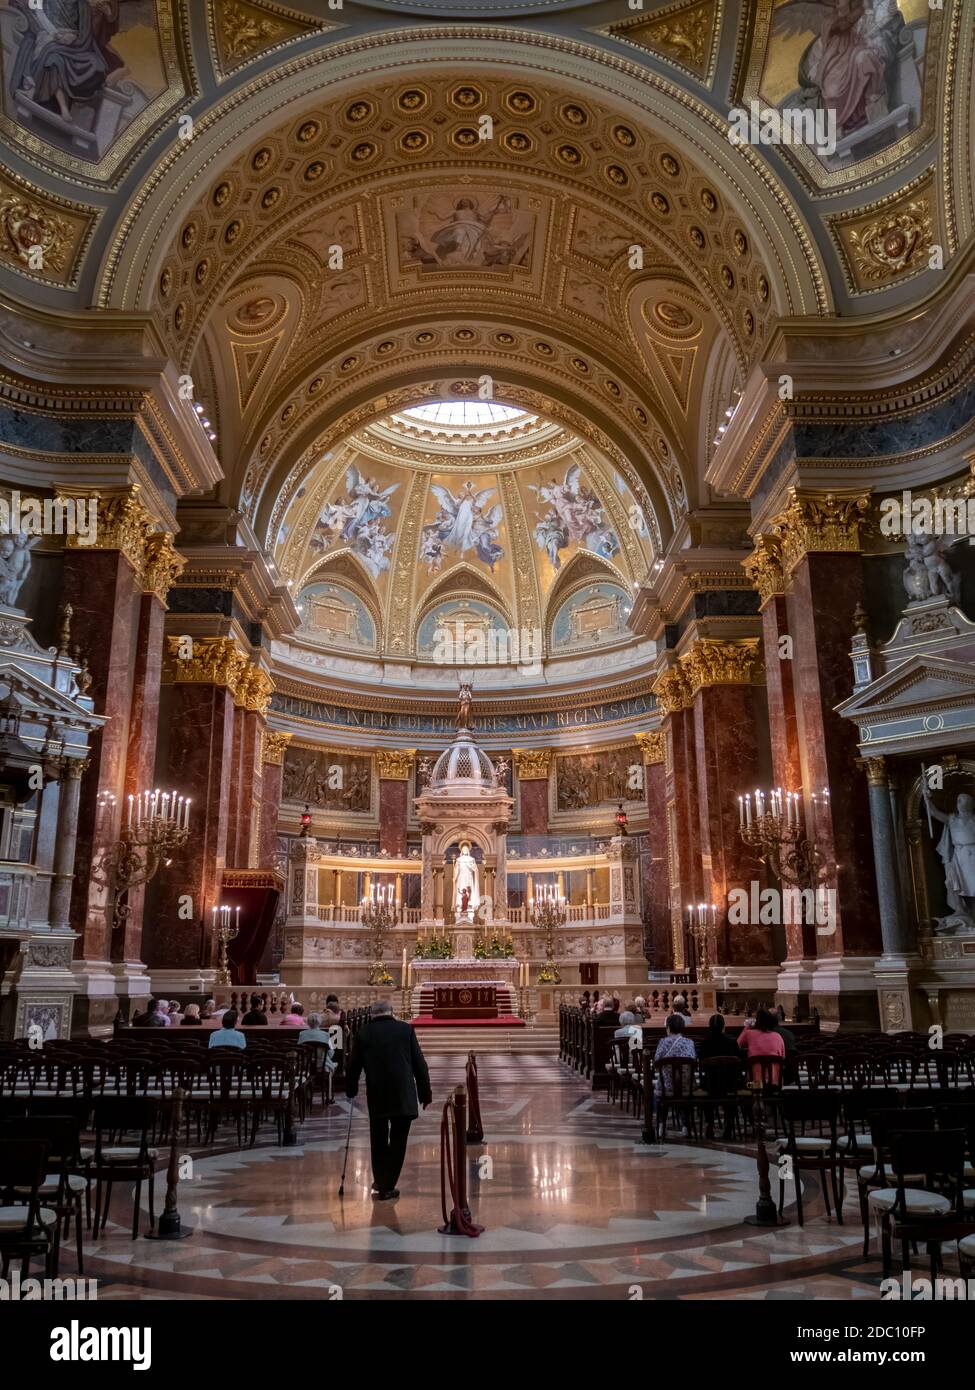 BUDAPEST, UNGHERIA - MAGGIO, 26, 2019: L'interno che guarda verso l'altare della basilica di santo stefano a budapest, ungheria Foto Stock